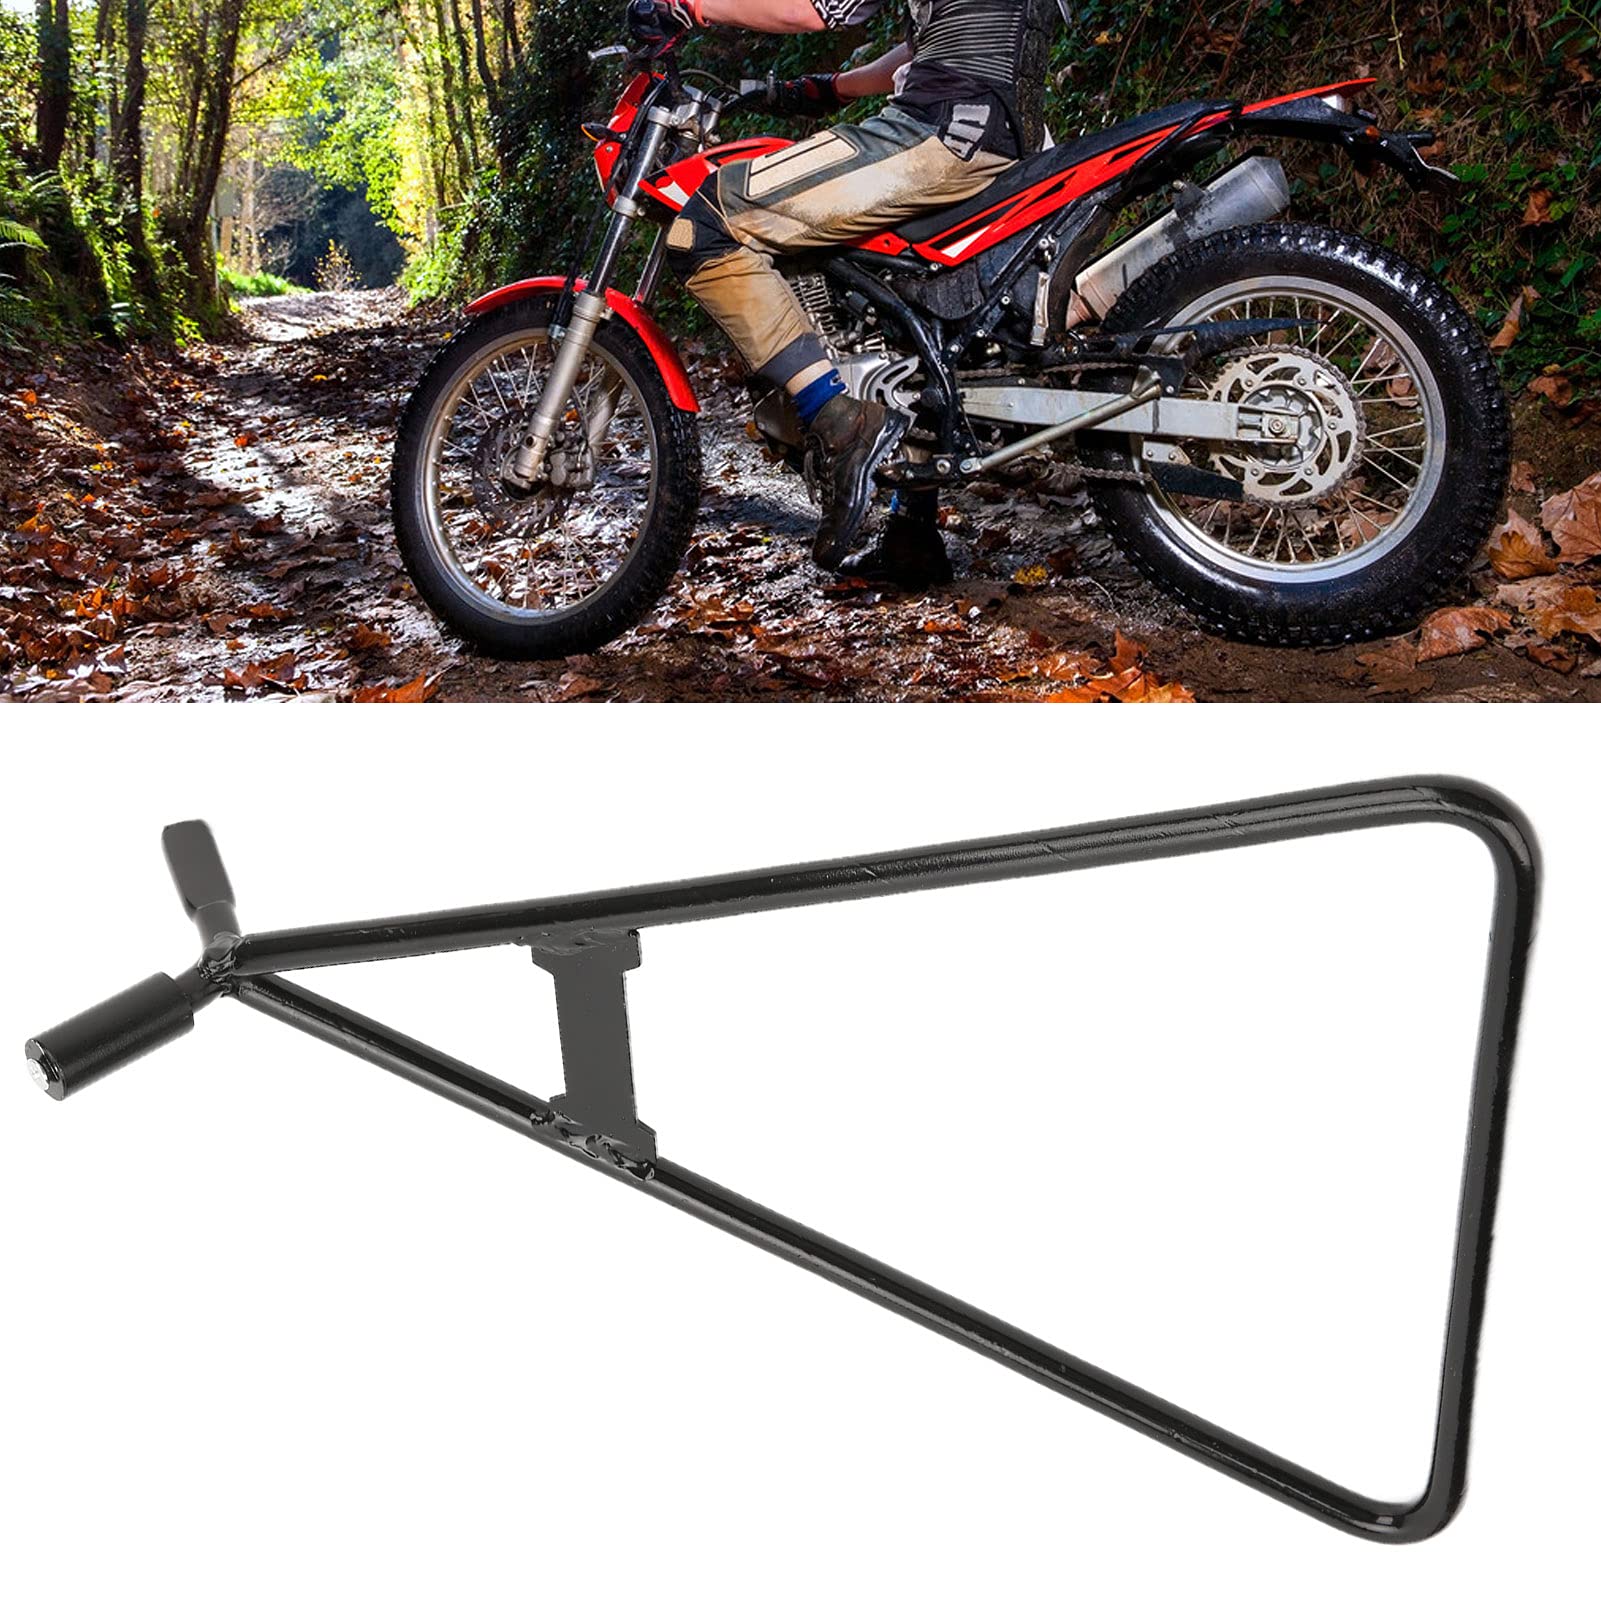 Motorrad Seitenständer, Dreieck Seitenständer Stahllegierung Ständer Zubehör Universal für Motorrad Motocross Dirt Bike von Qiilu